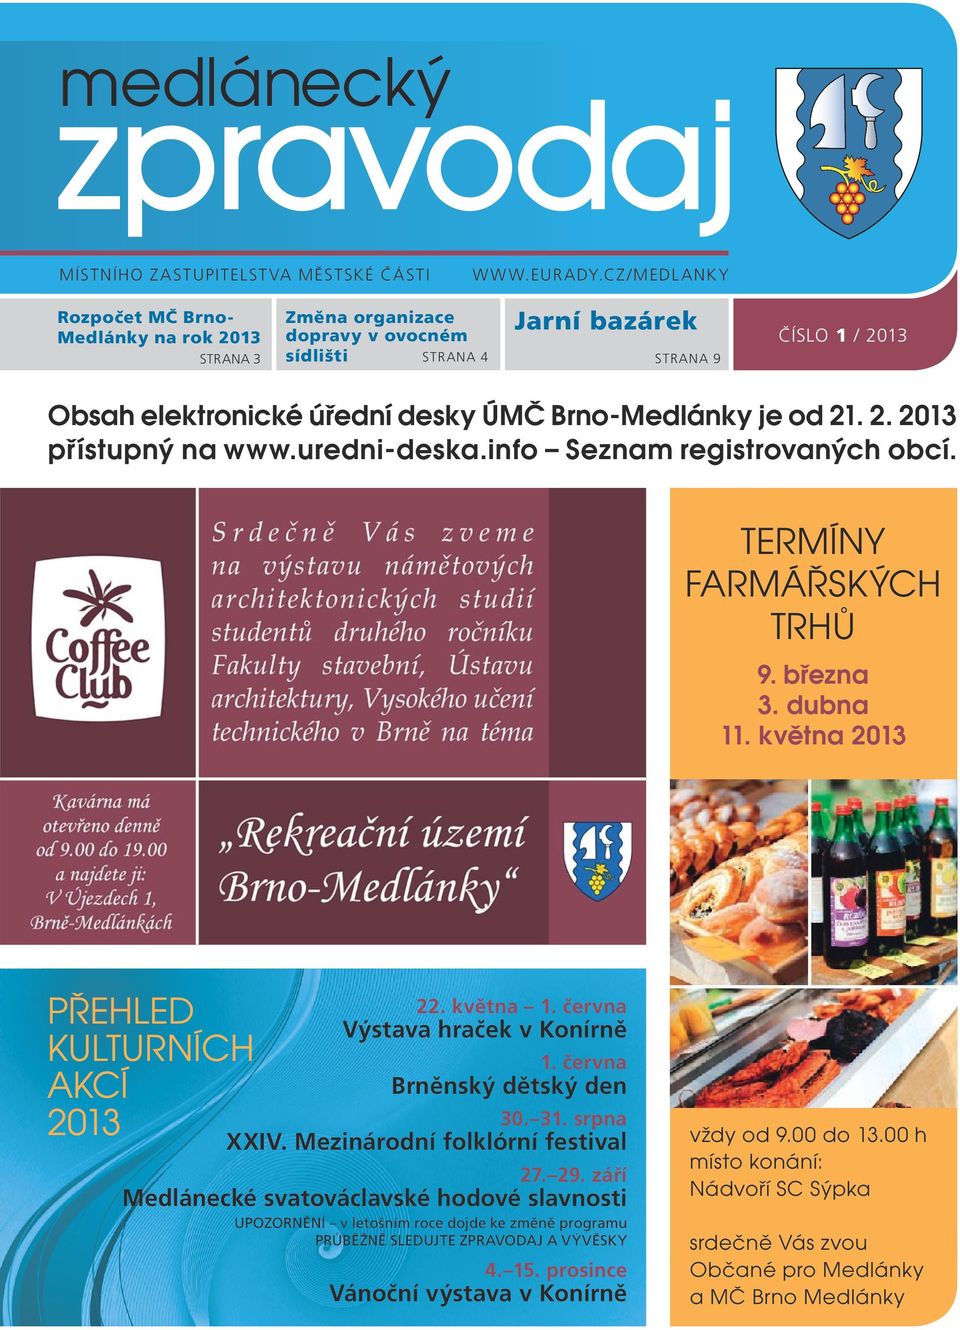 Brno-Medlánky je od 21. 2. 2013 přístupný na www.uredni-deska.info Seznam registrovaných obcí. TERMÍNY FARMÁŘSKÝCH TRHŮ 9. března 3. dubna 11. května 2013 Přehled kulturních akcí 2013 22. května 1.